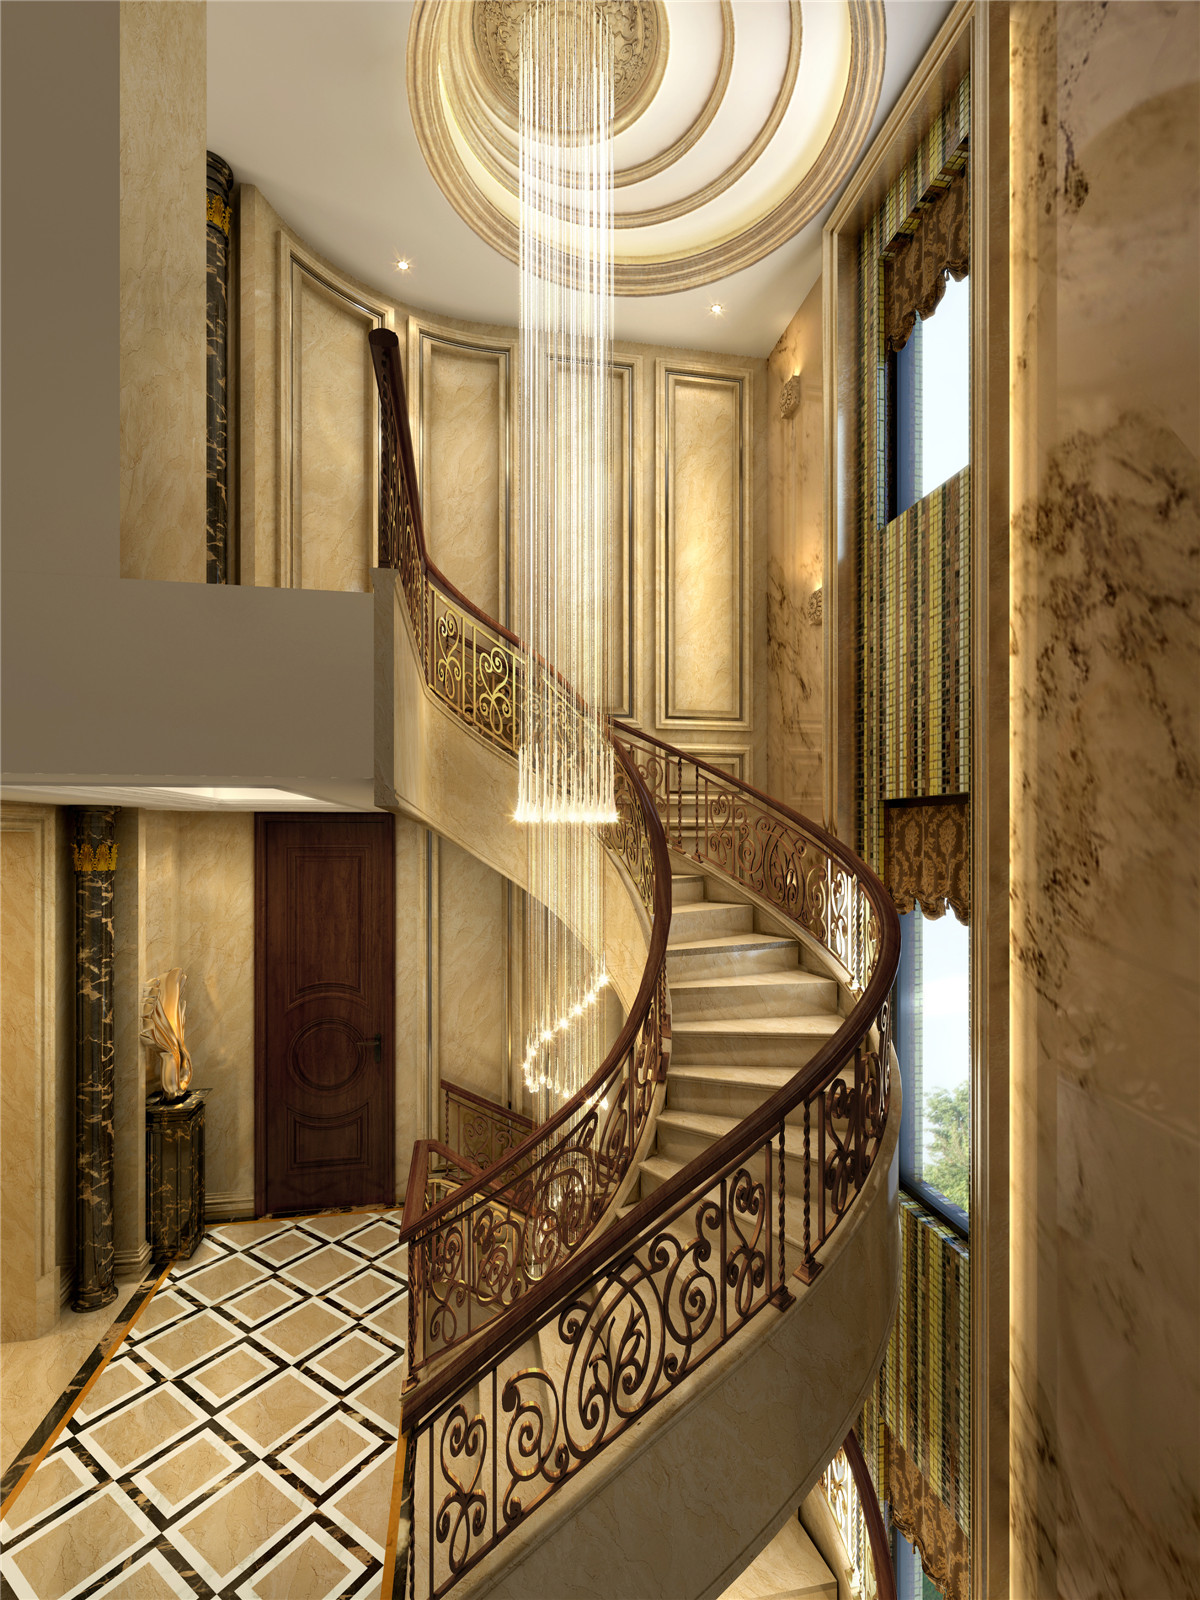 华润置地 橡树湾别墅 欧式古典 腾龙设计 楼梯图片来自腾龙设计在华润置地橡树湾别墅新古典设计的分享